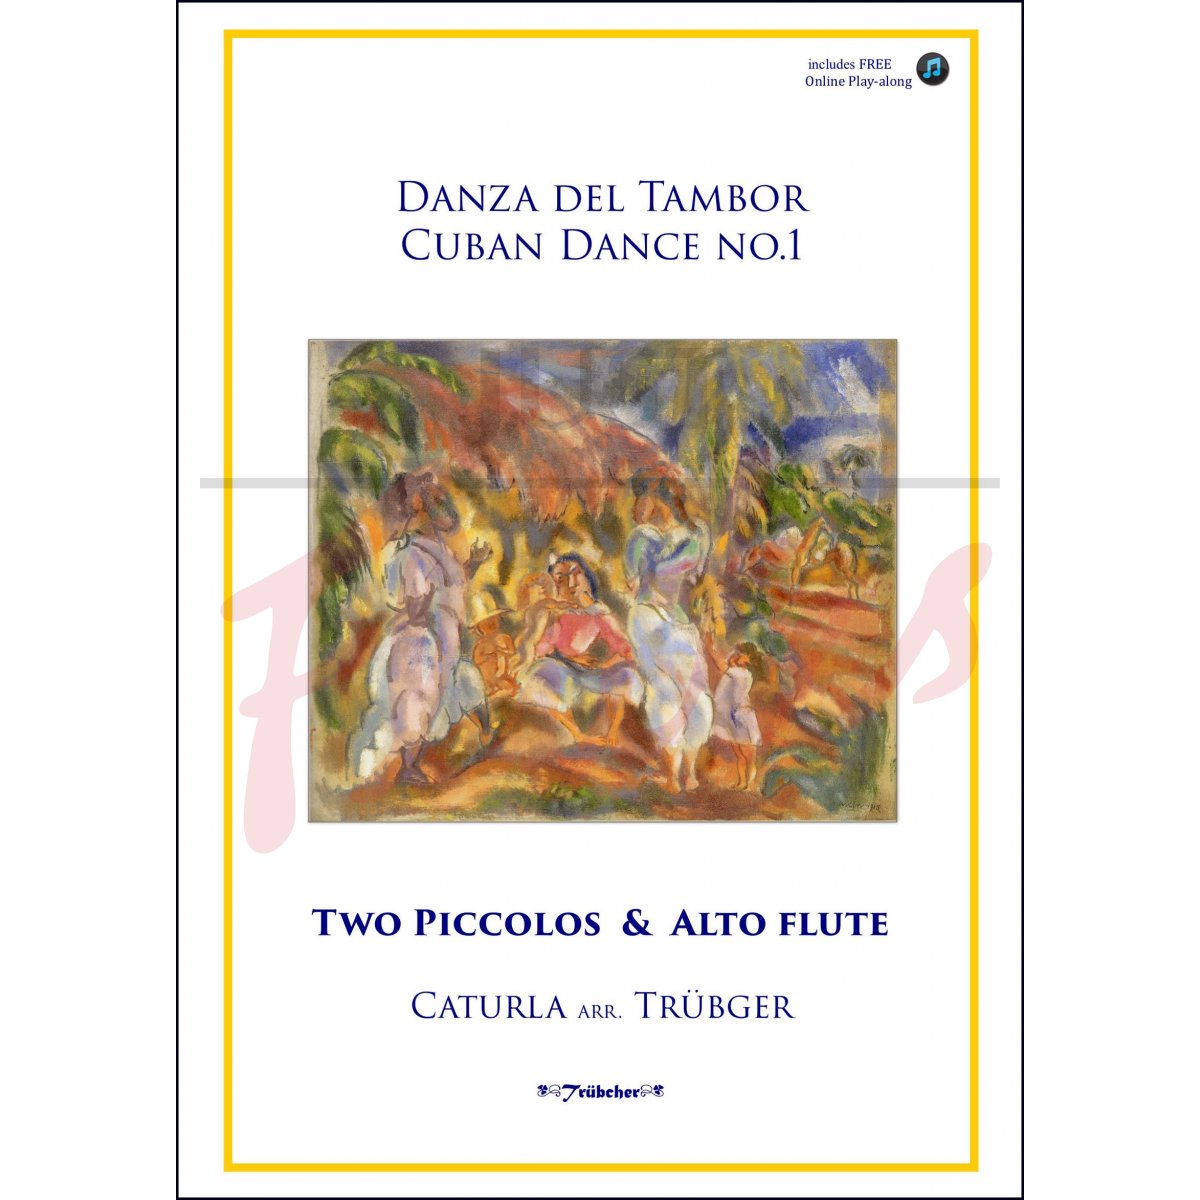 Danza del Tambor - Cuban Dance No 1